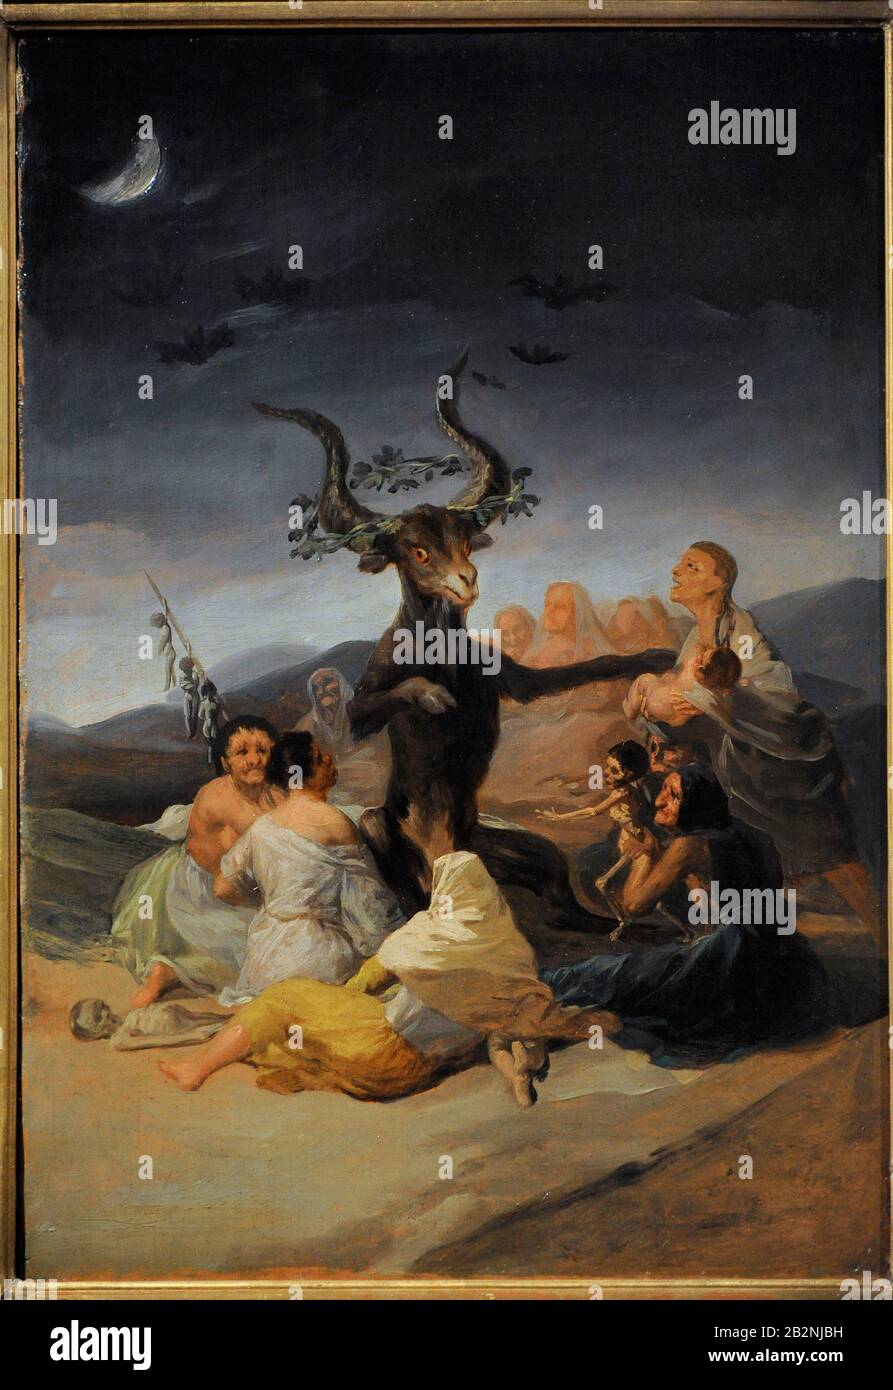 Francisco de Goya y Lucientes (1746-1828). Spanischer Maler. The Witches Sabbath, 1797-1798. Lazaro Galdiano Museum. Madrid. Spanien. Stockfoto